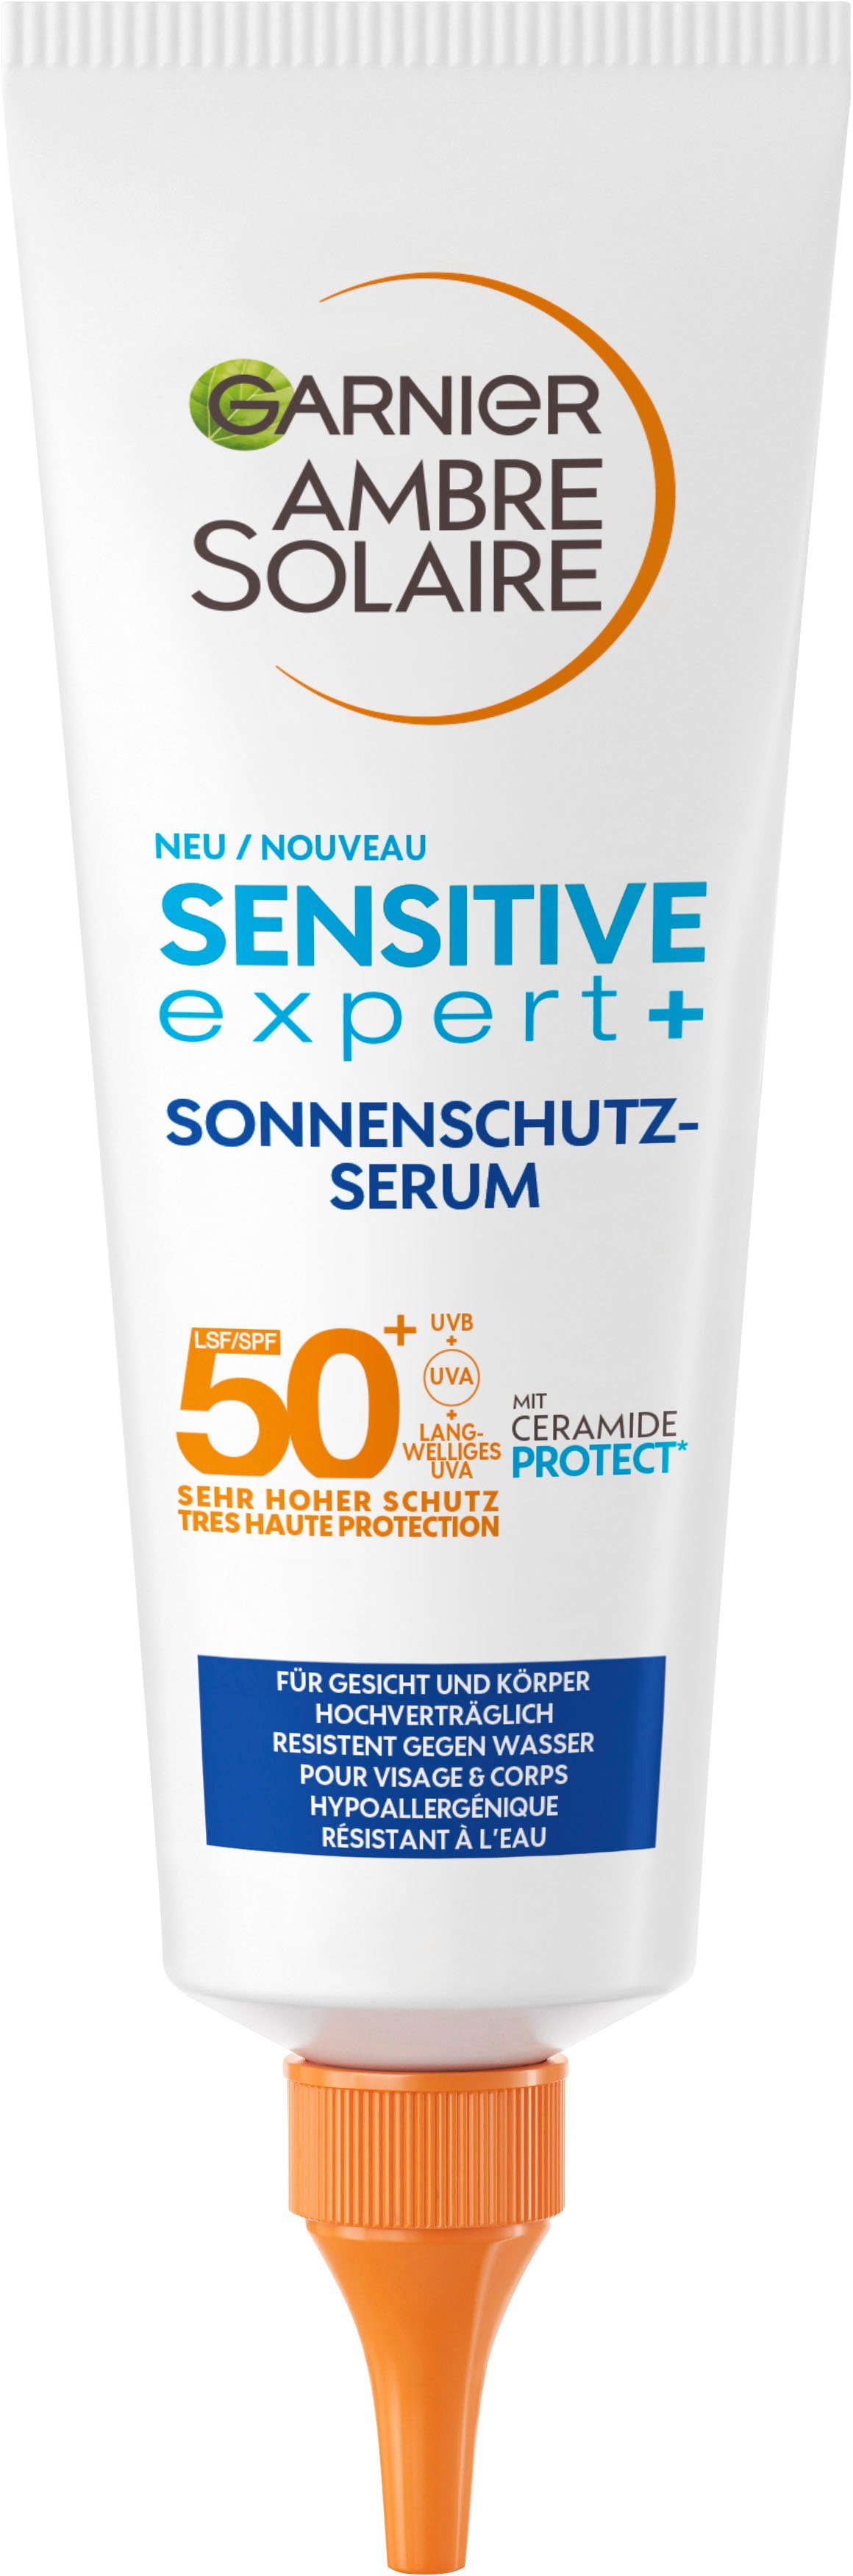 Gesichtsserum Sonnenschutz-Serum Sensitive Garnier GARNIER